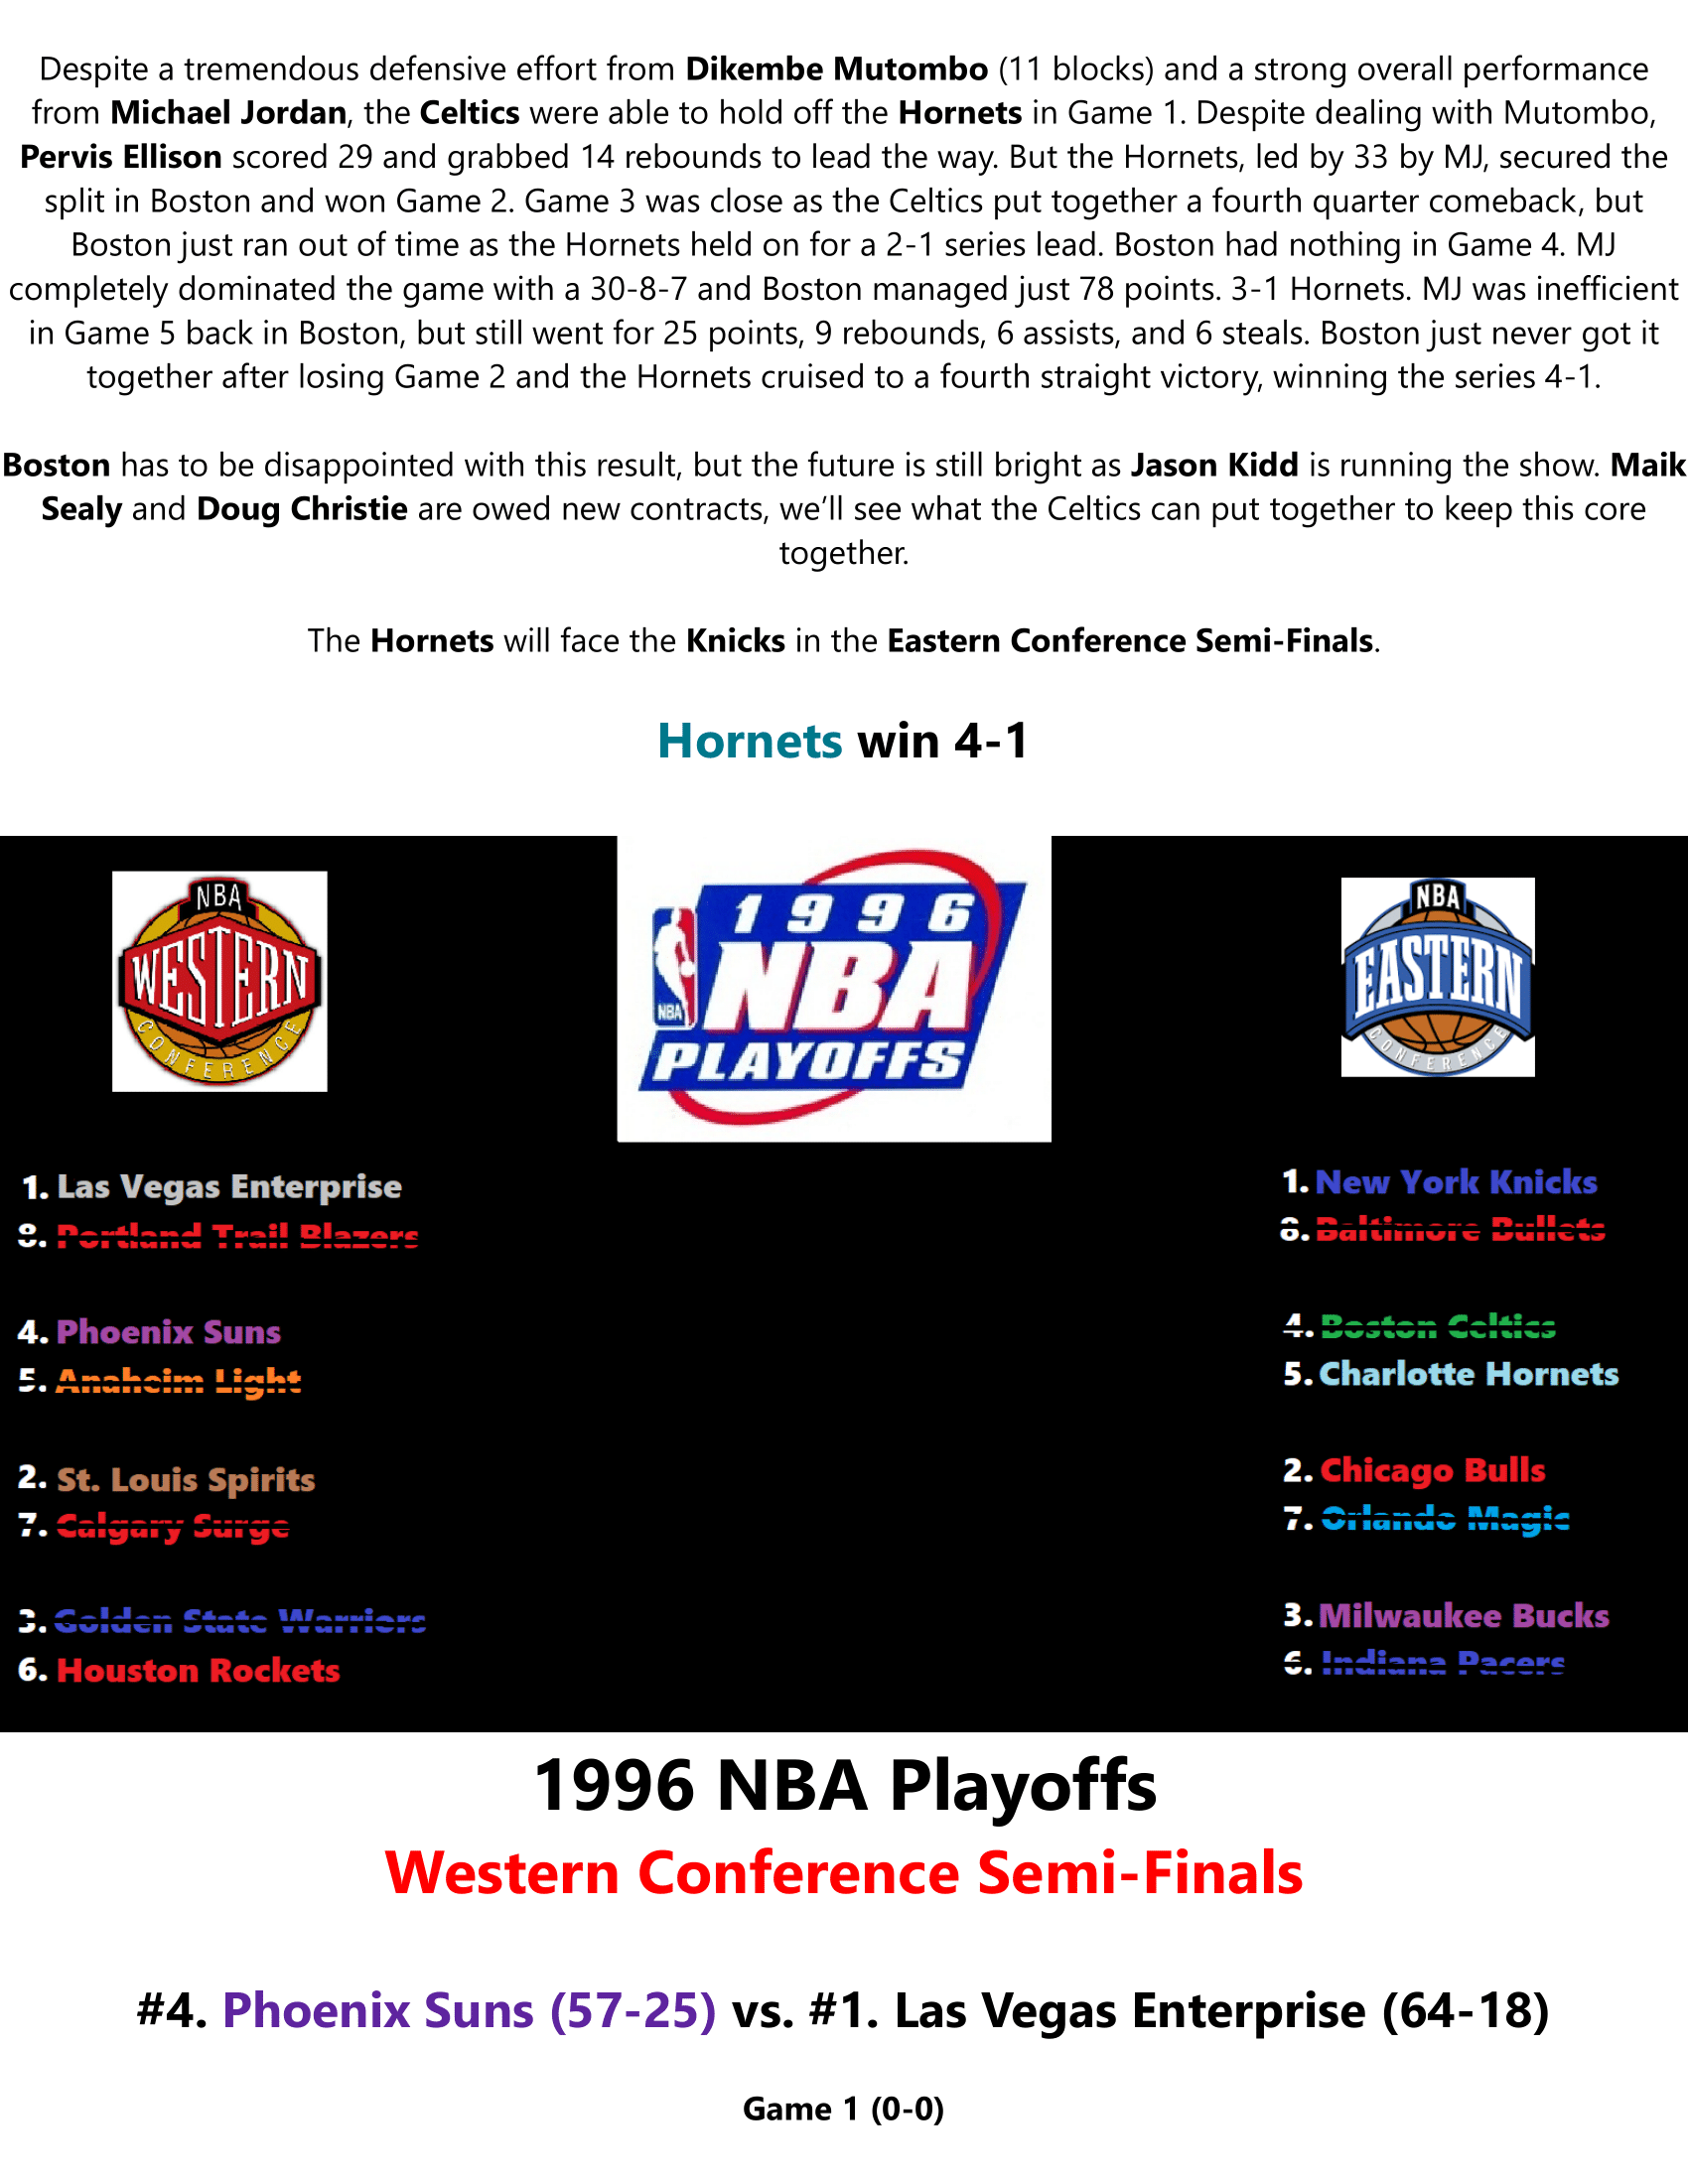 95-96-Part-4-Playoffs-12.png